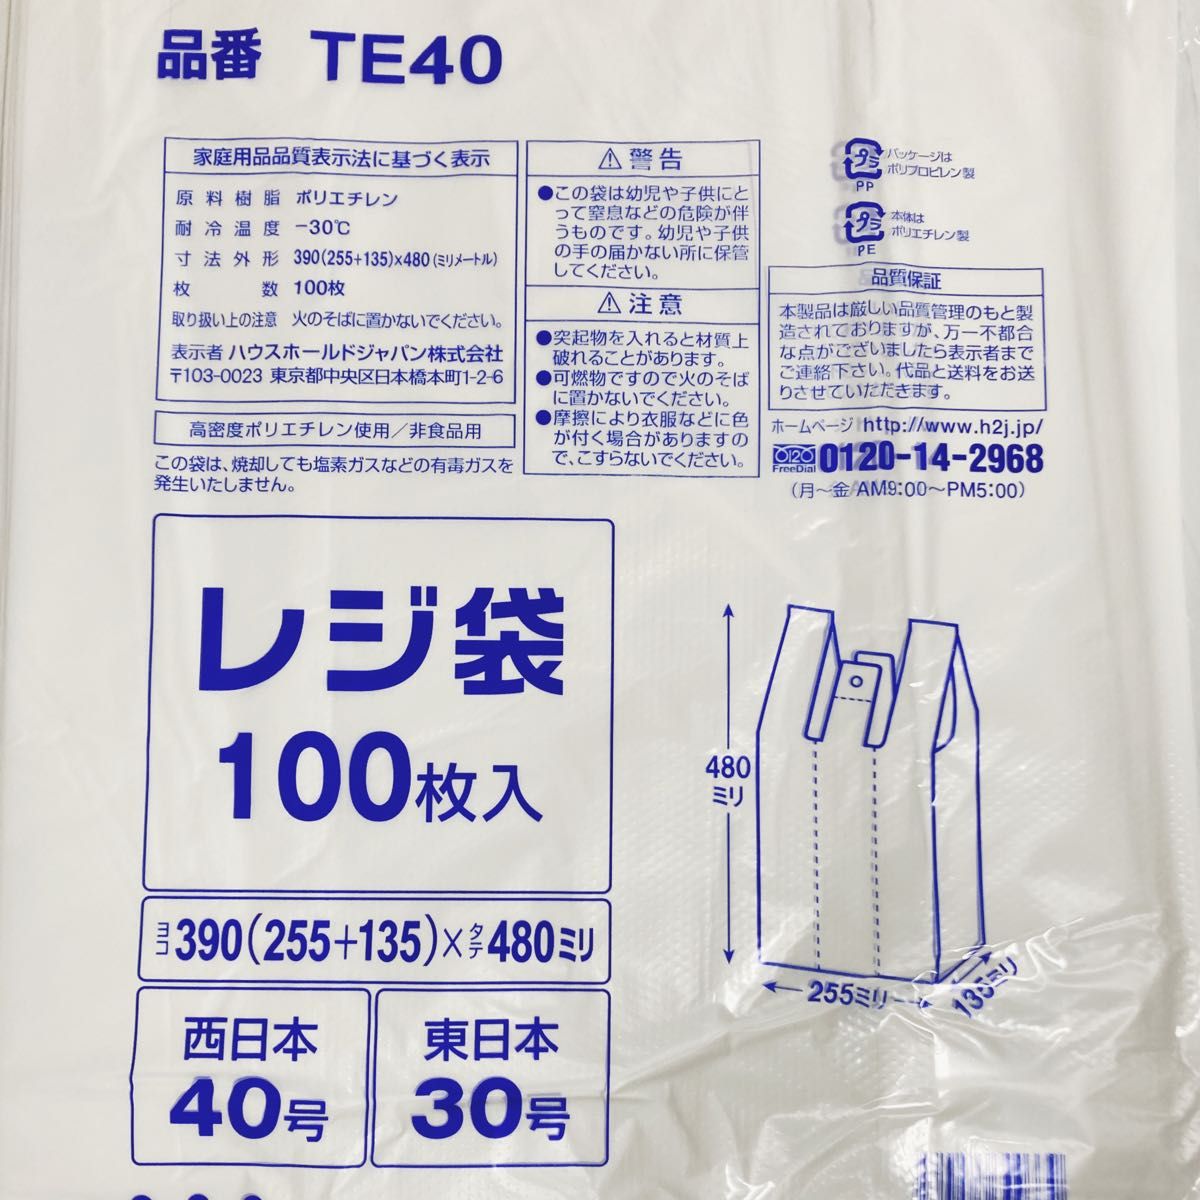 レジ袋 L 300枚 乳白色 無地 エコバッグ 手提げ袋 買い物袋 スーパーの袋 ビニール袋 ポリ袋 ゴミ袋 TE40